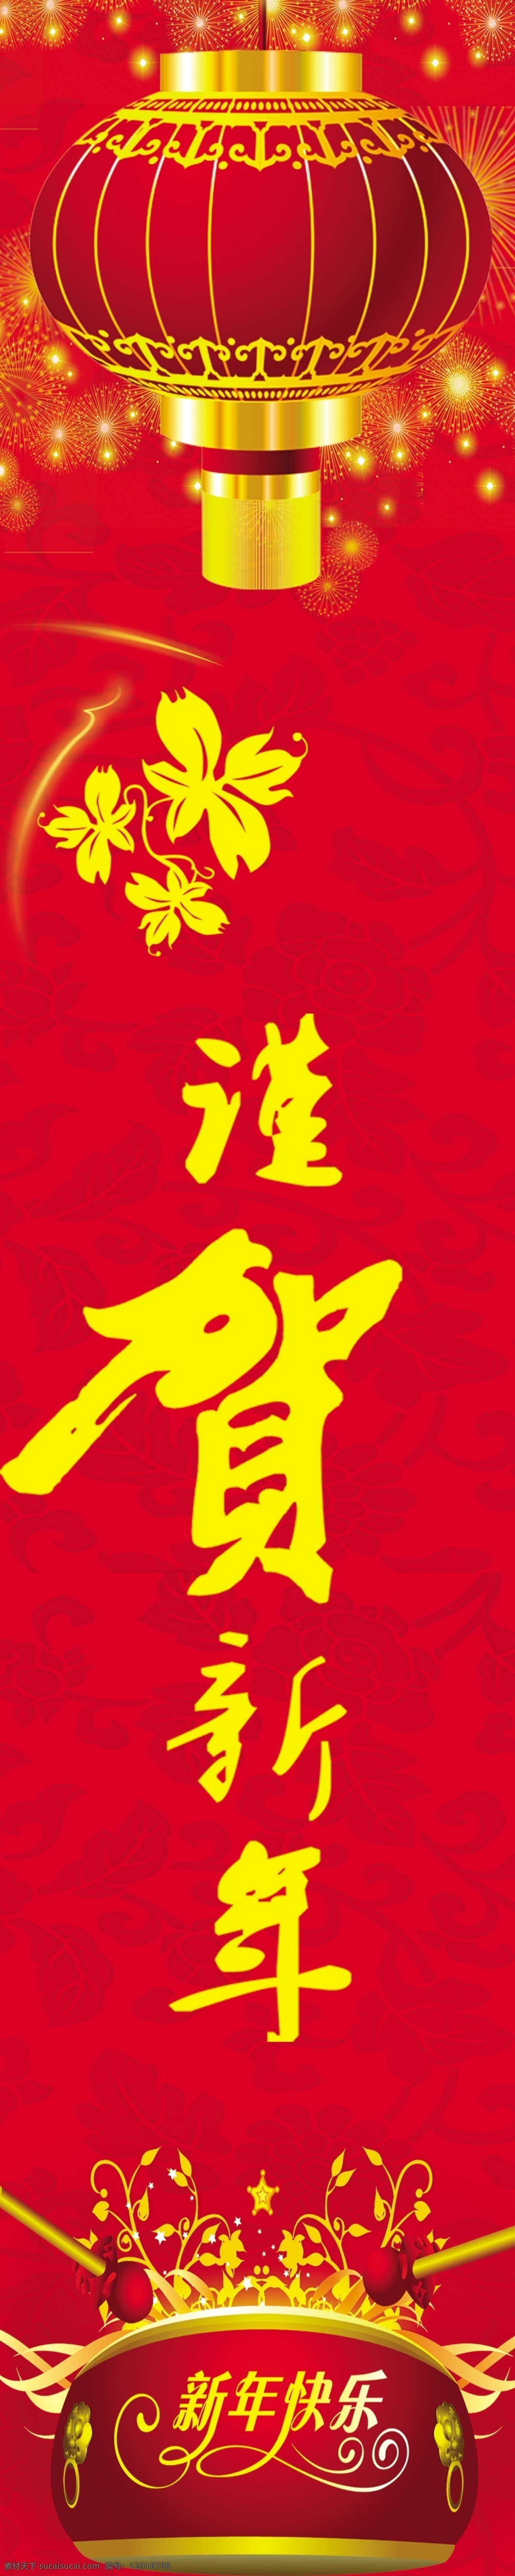 谨贺新年 喜庆背景 灯笼 新年快乐 2012 花纹 线条 广告设计模板 源文件